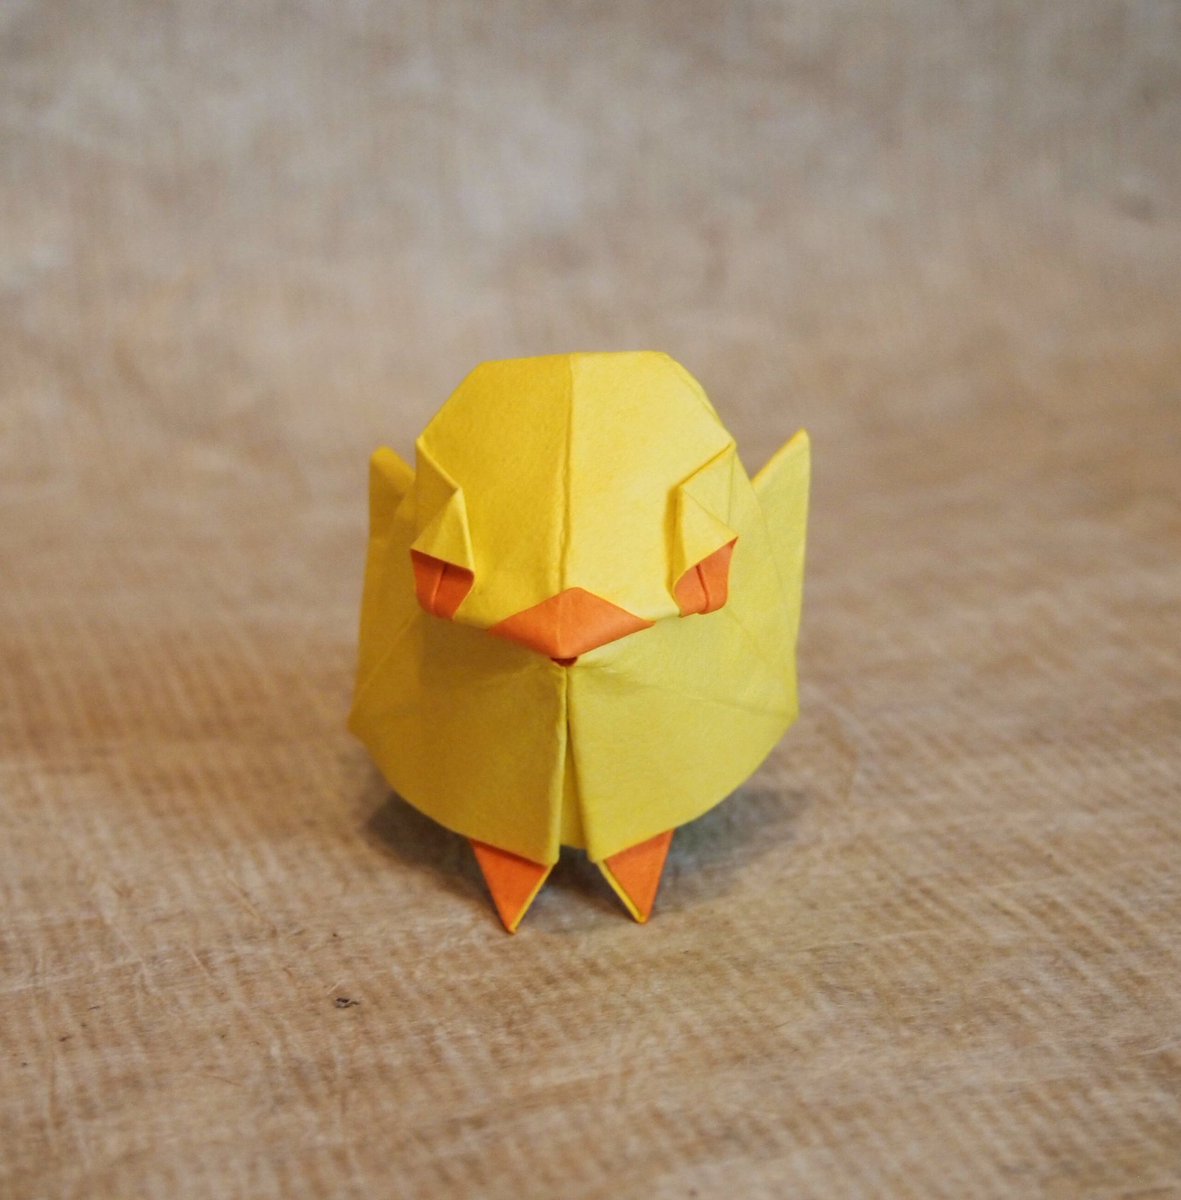 一匹柴犬 折り紙作品 ひよこ 創作 折り 一匹柴犬 数年前に折ったヒヨコが無理矢理仕上げであまり納得できてなかったので再トライ シンプルにかわいいデザインにできました 魚の基本的より Origami Chick 折り紙作品 折り紙 ひよこ T